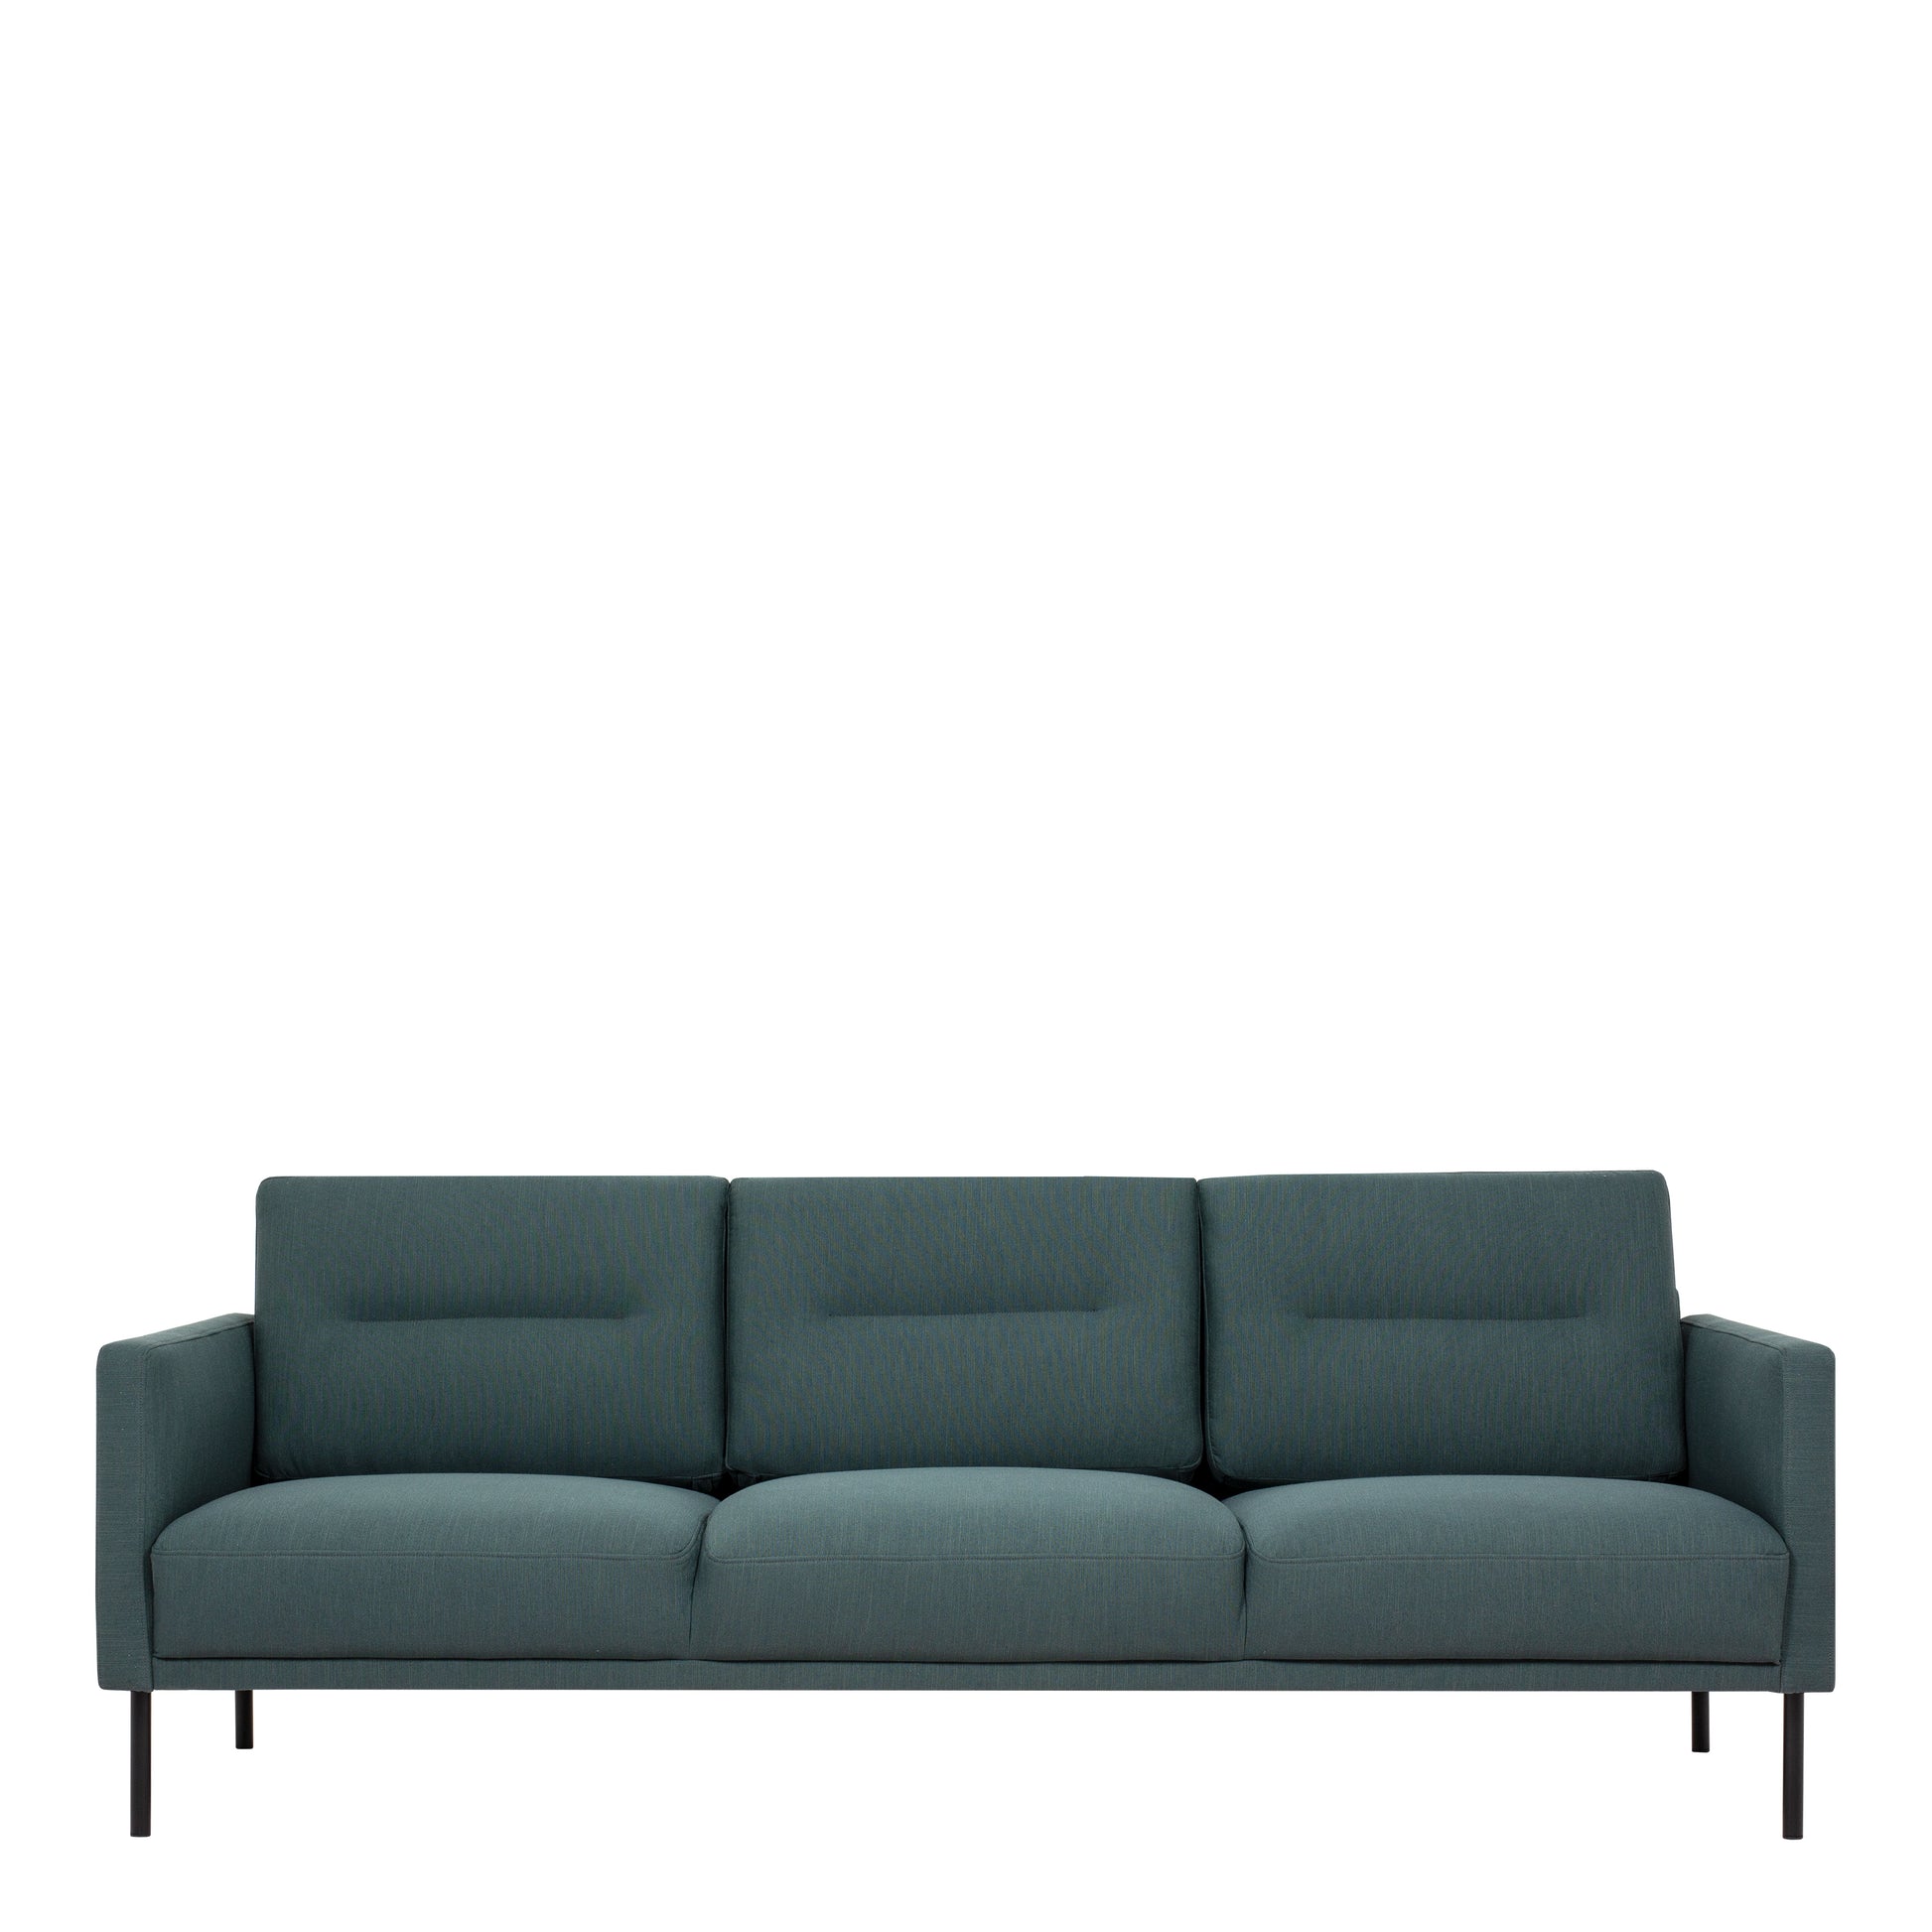 Larvik  3 Seater Sofa - Dark Green, Black Legs